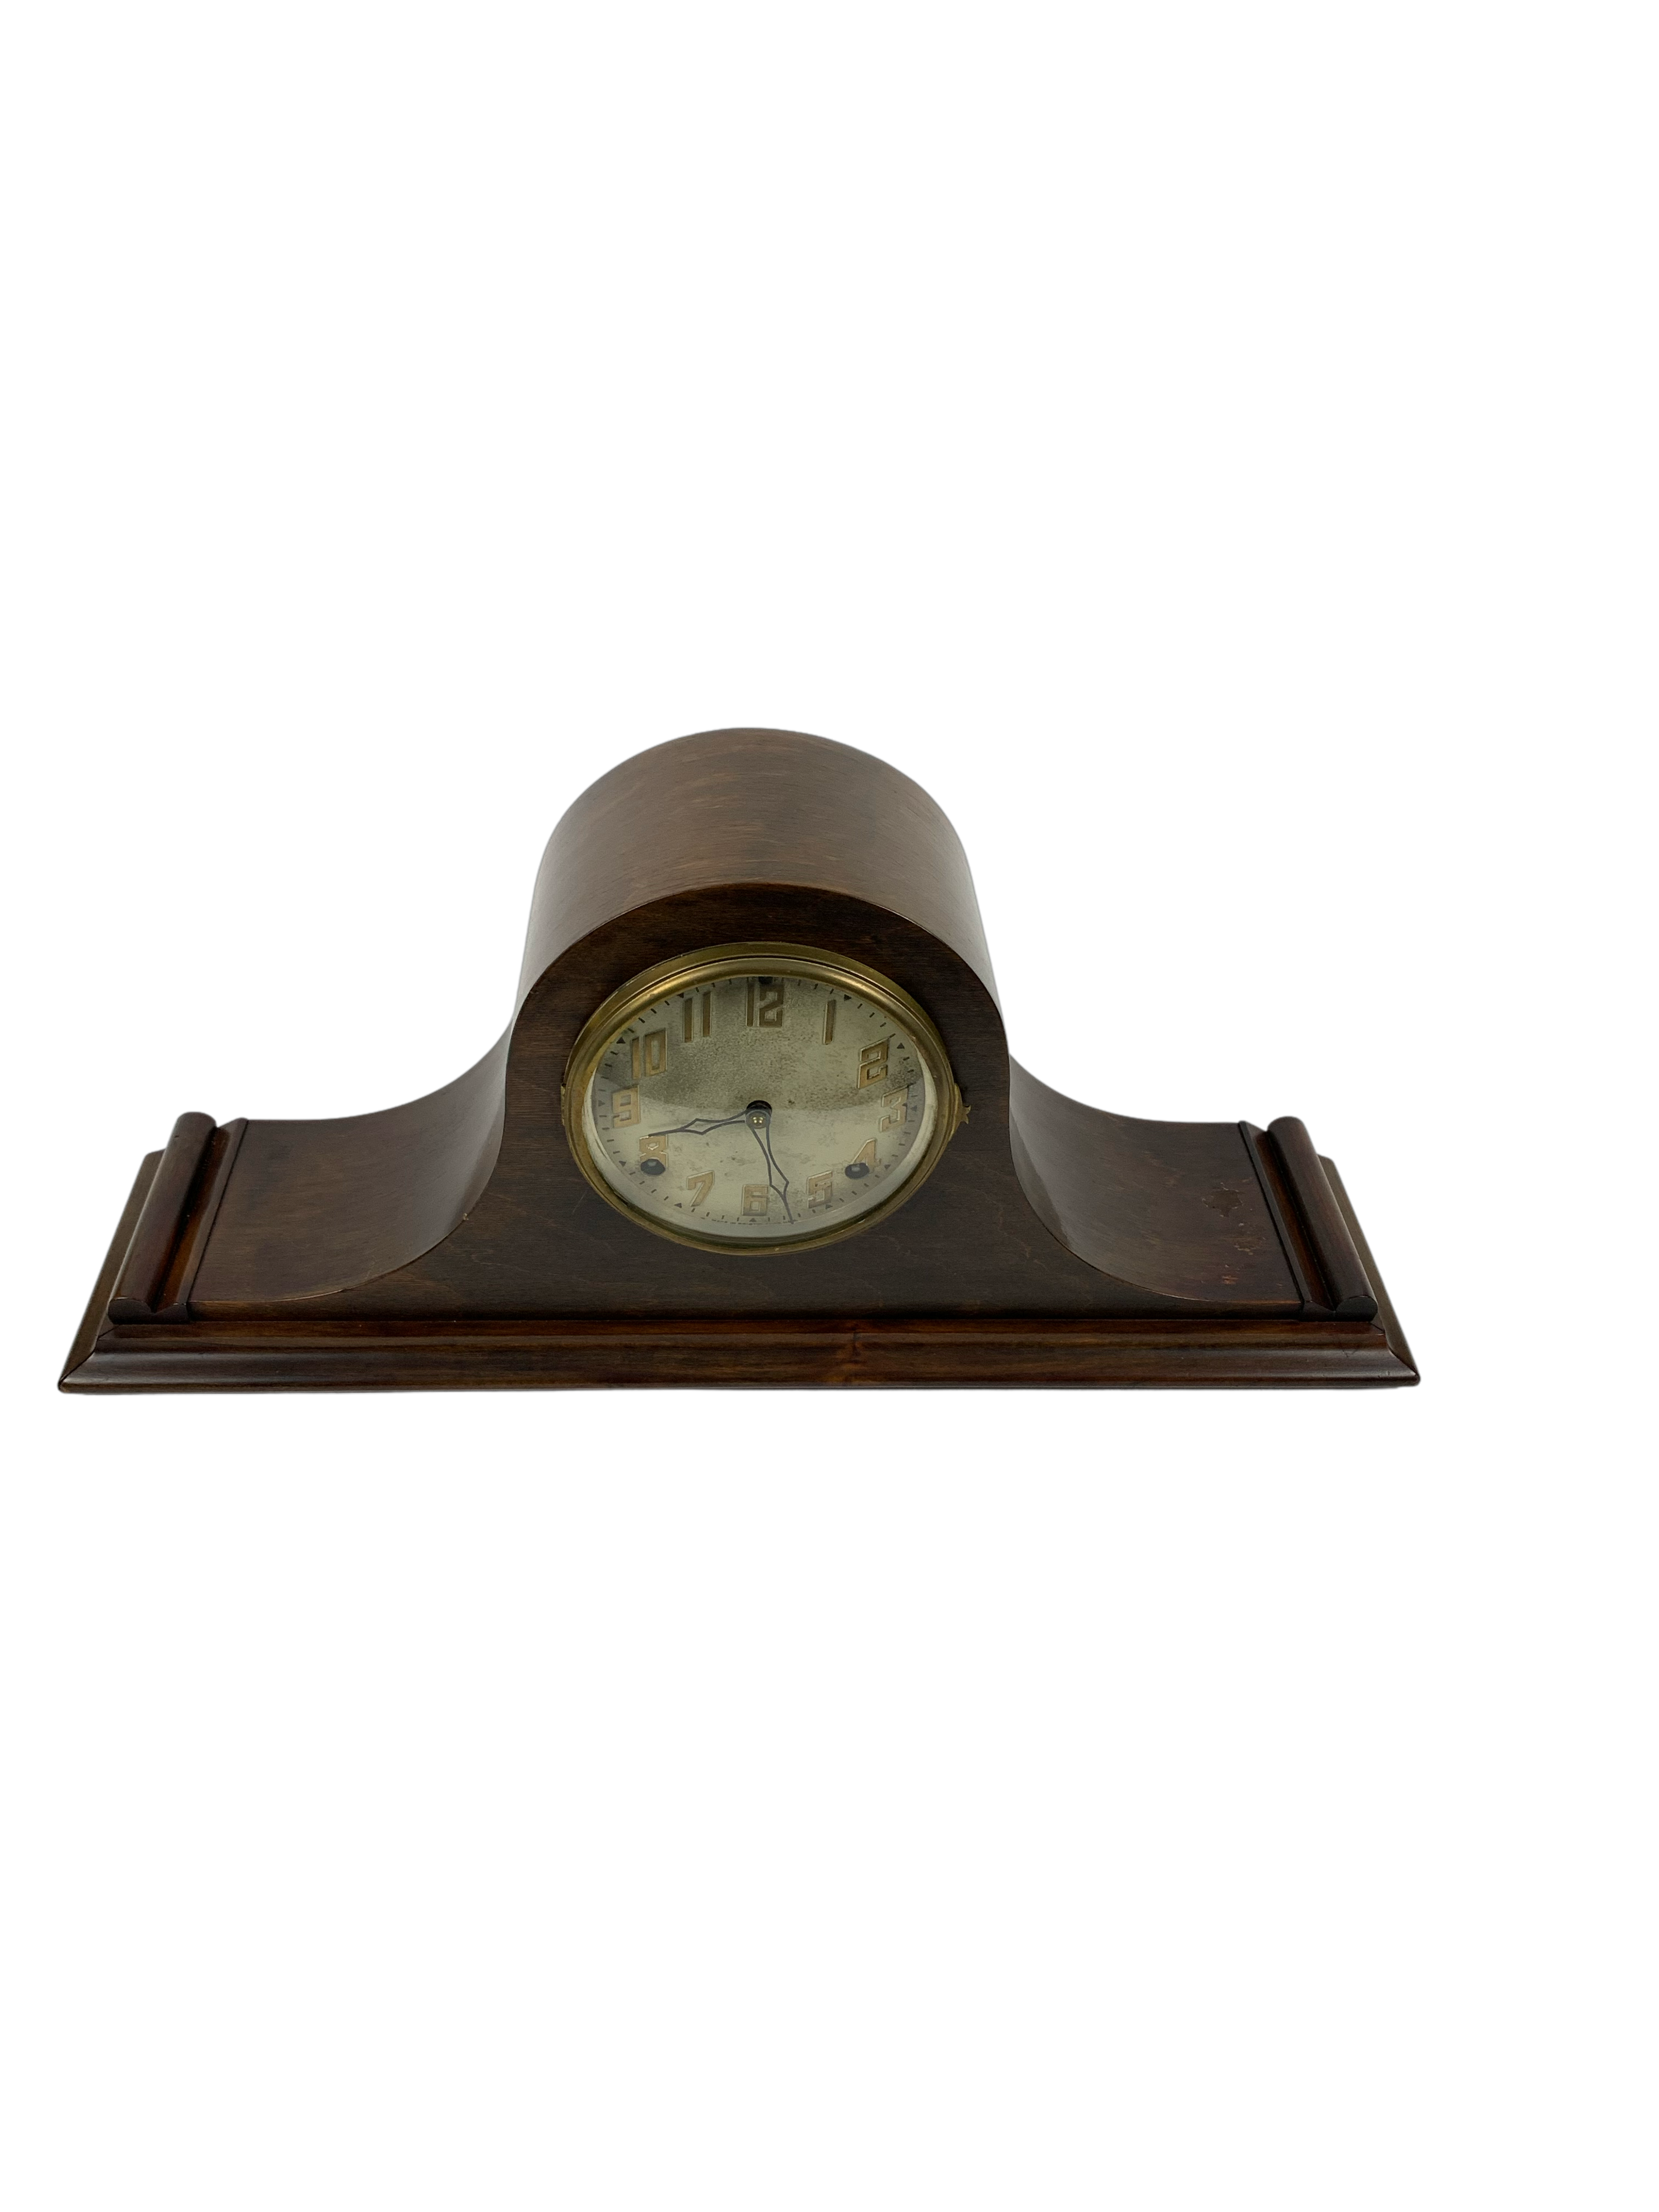 Vintage Ingraham Mantel Clock - Hunt and Bloom